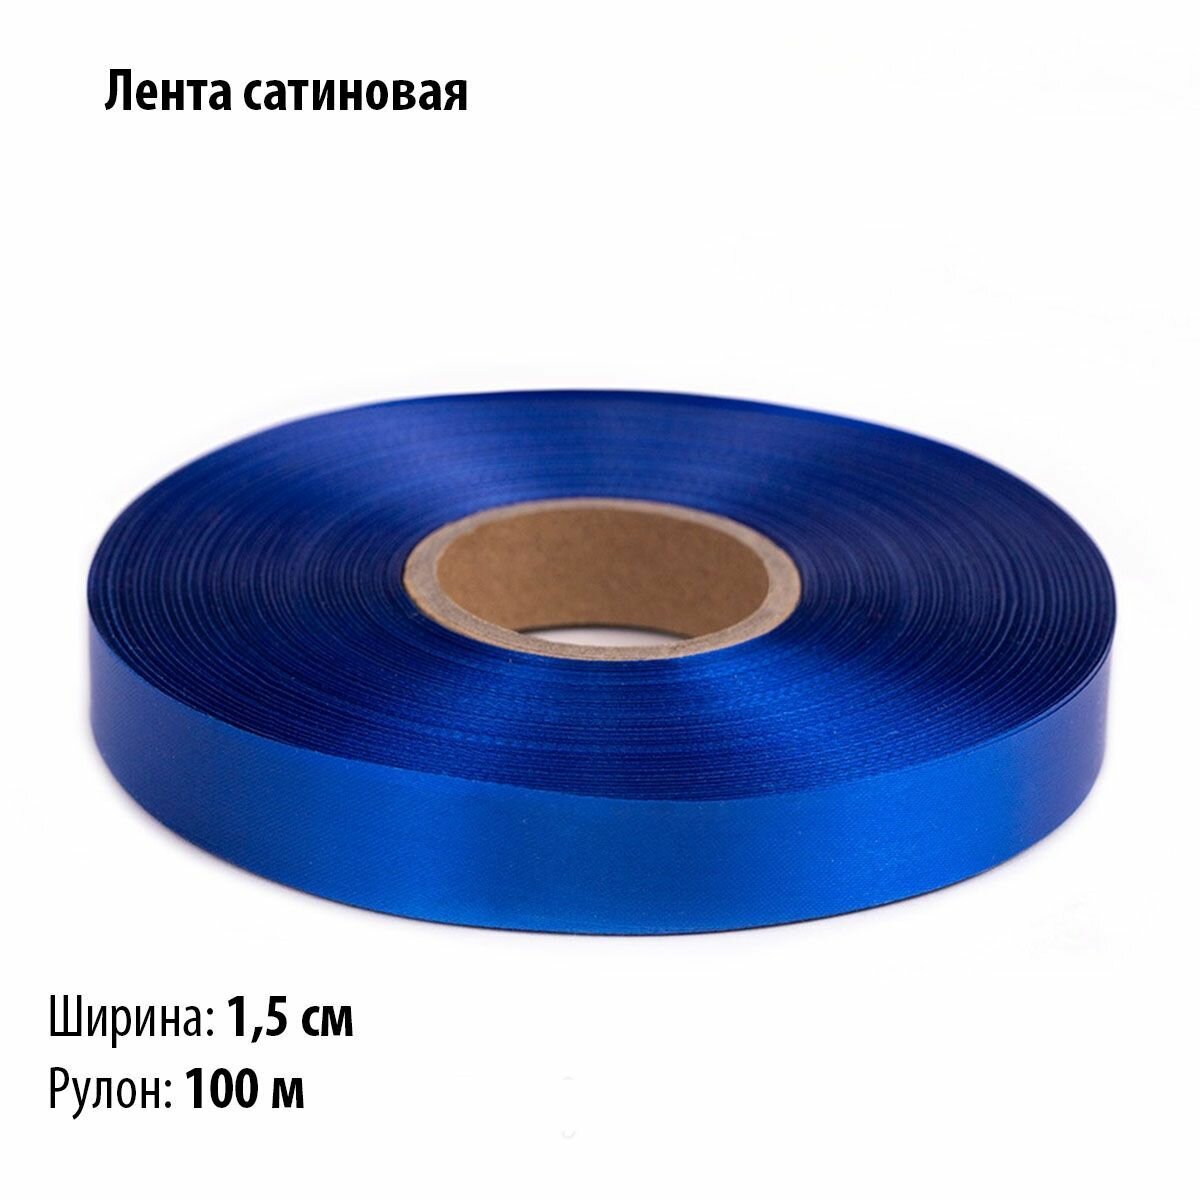 Лента сaтин ширина 1,5 см, синяя, 100 метров